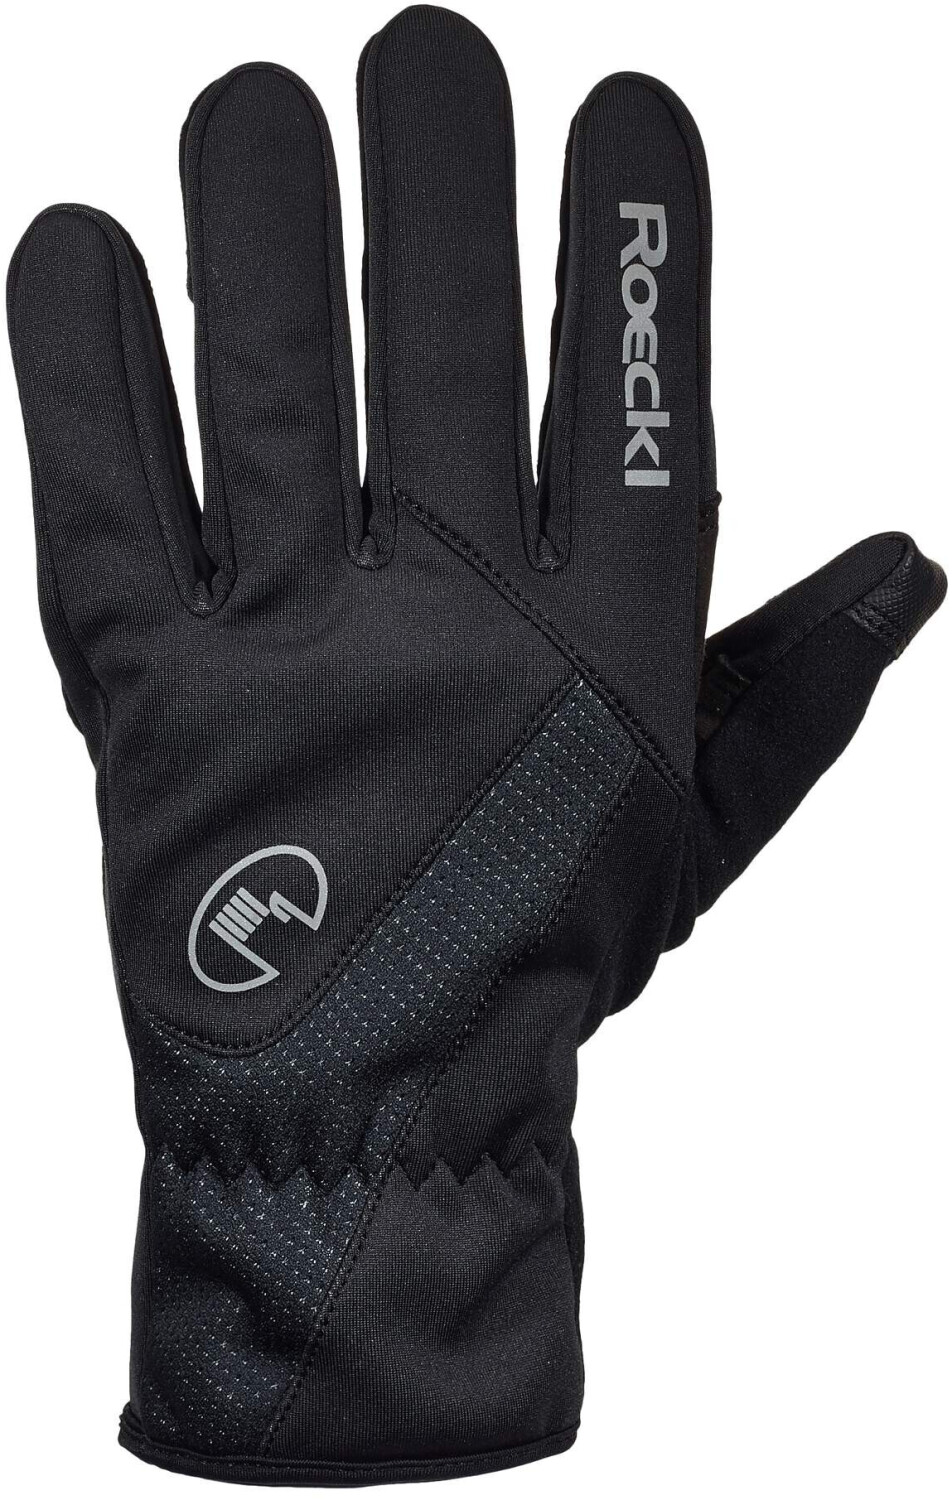 Wowow Wowow Dark 4.0 Gloves reflektierend grau/black/gelb ab 39,95 € |  Preisvergleich bei